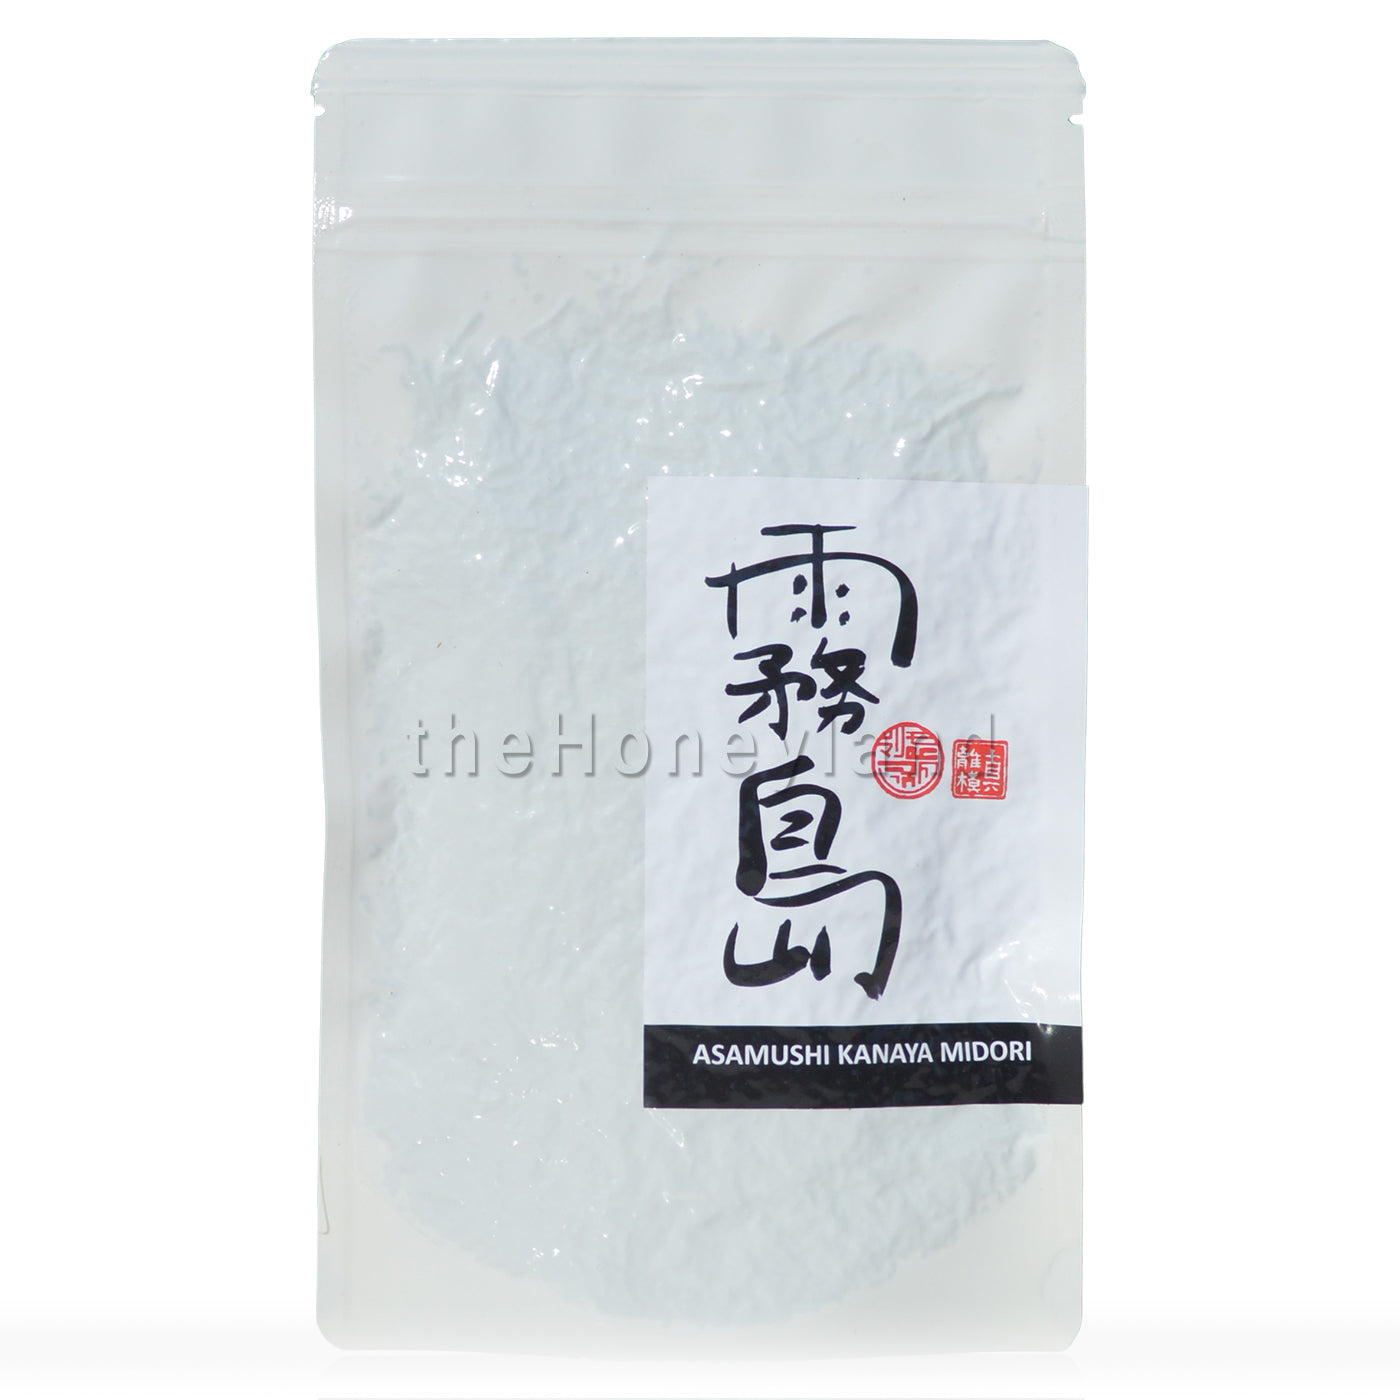 Organic Sencha tea "Asamushi Kanaya Midori"